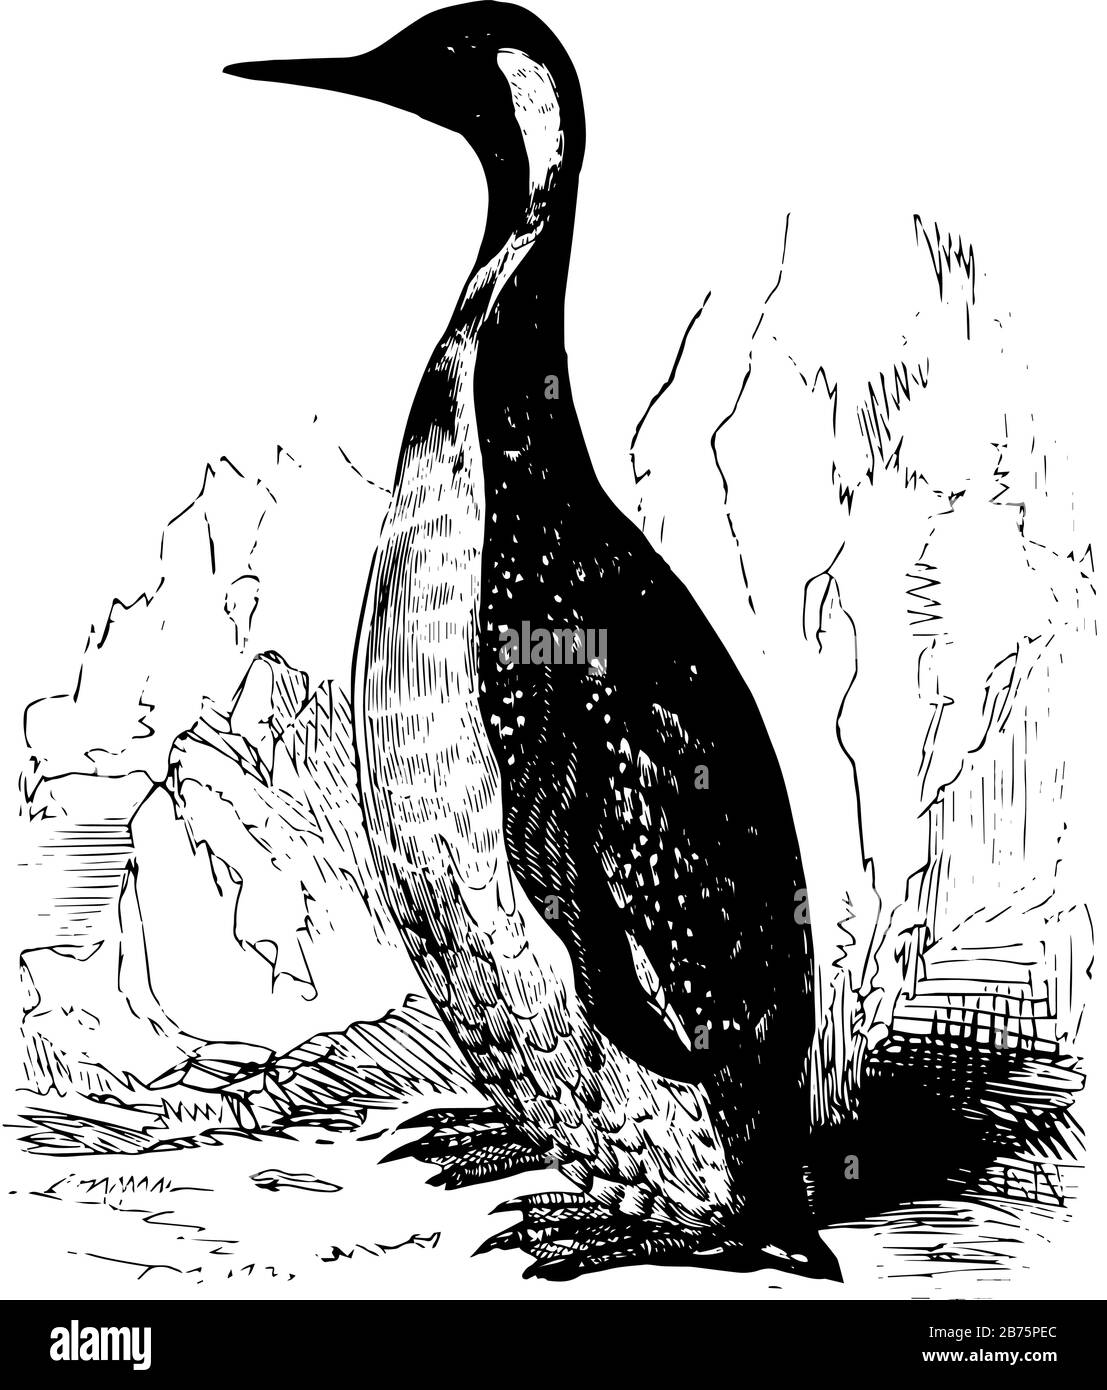 Il Re Pinguino si trova nelle latitudini meridionali del Sud America e delle isole circostanti, disegno di linee d'epoca o illustrazione dell'incisione. Illustrazione Vettoriale